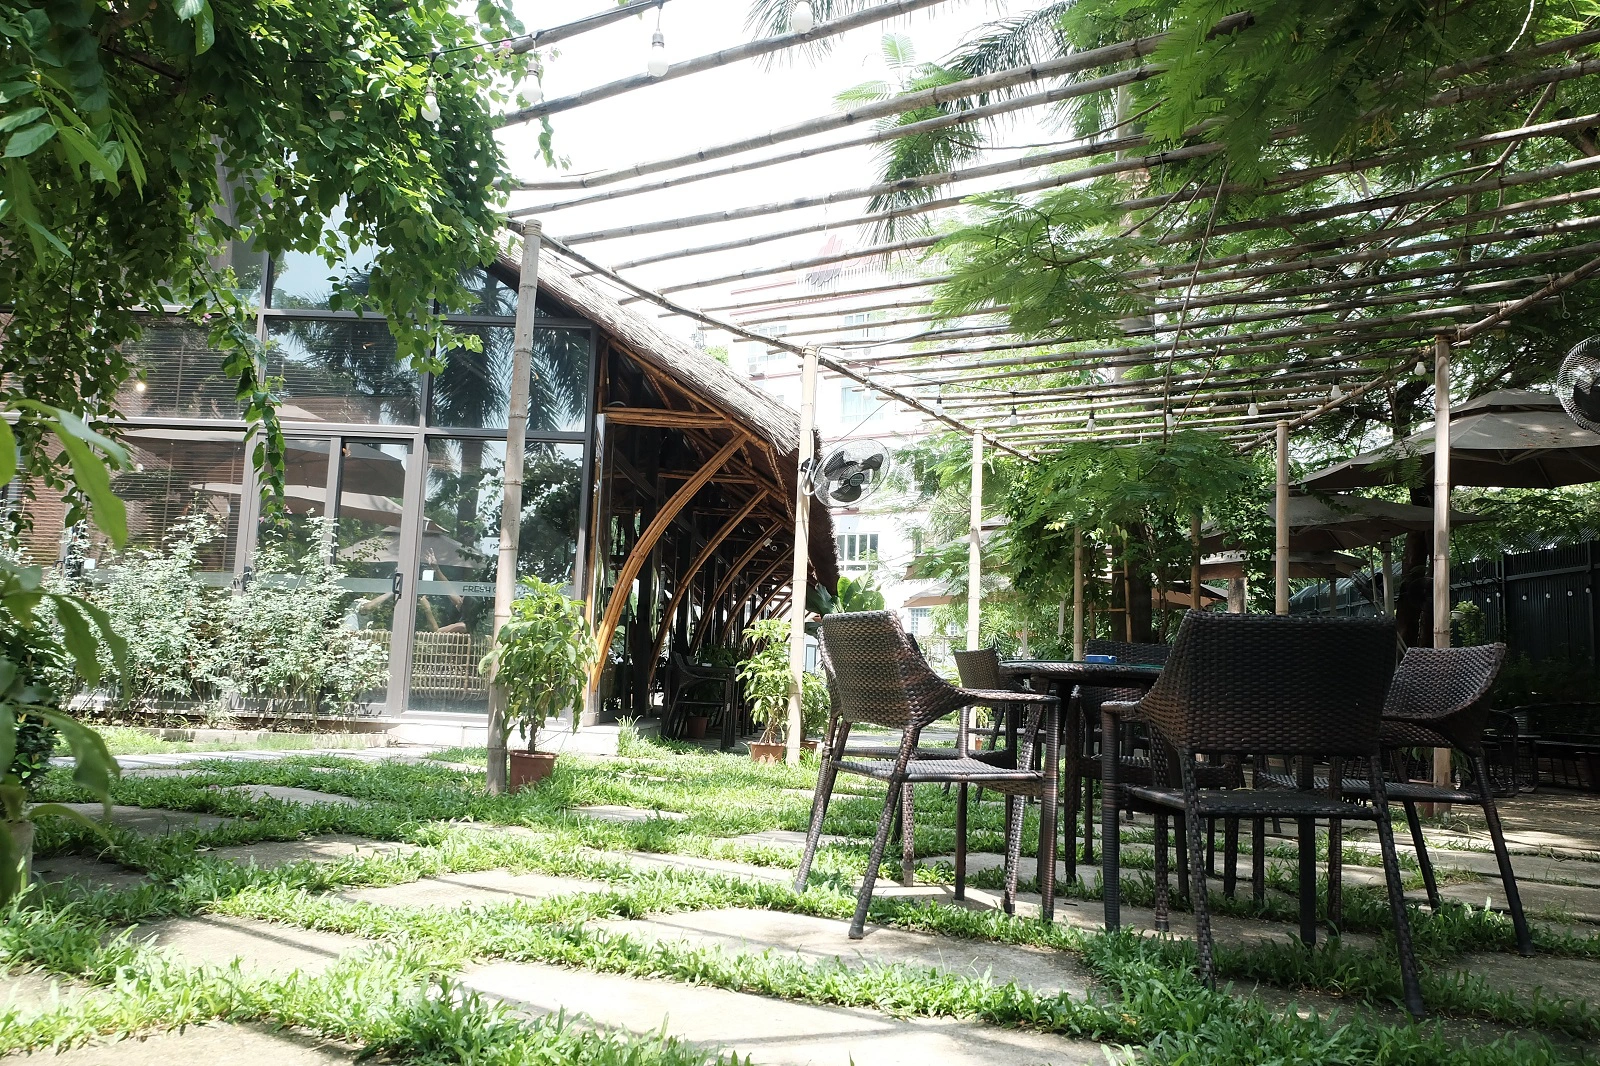 Đúng như tên gọi, Fresh Garden Cafe (168 Nguyễn Khánh Toàn, Cầu Giấy, Hà Nội) đã đưa khách hàng đến với một khu vườn ngập tràn sắc xanh, từ tường bao đến nền sân cỏ.